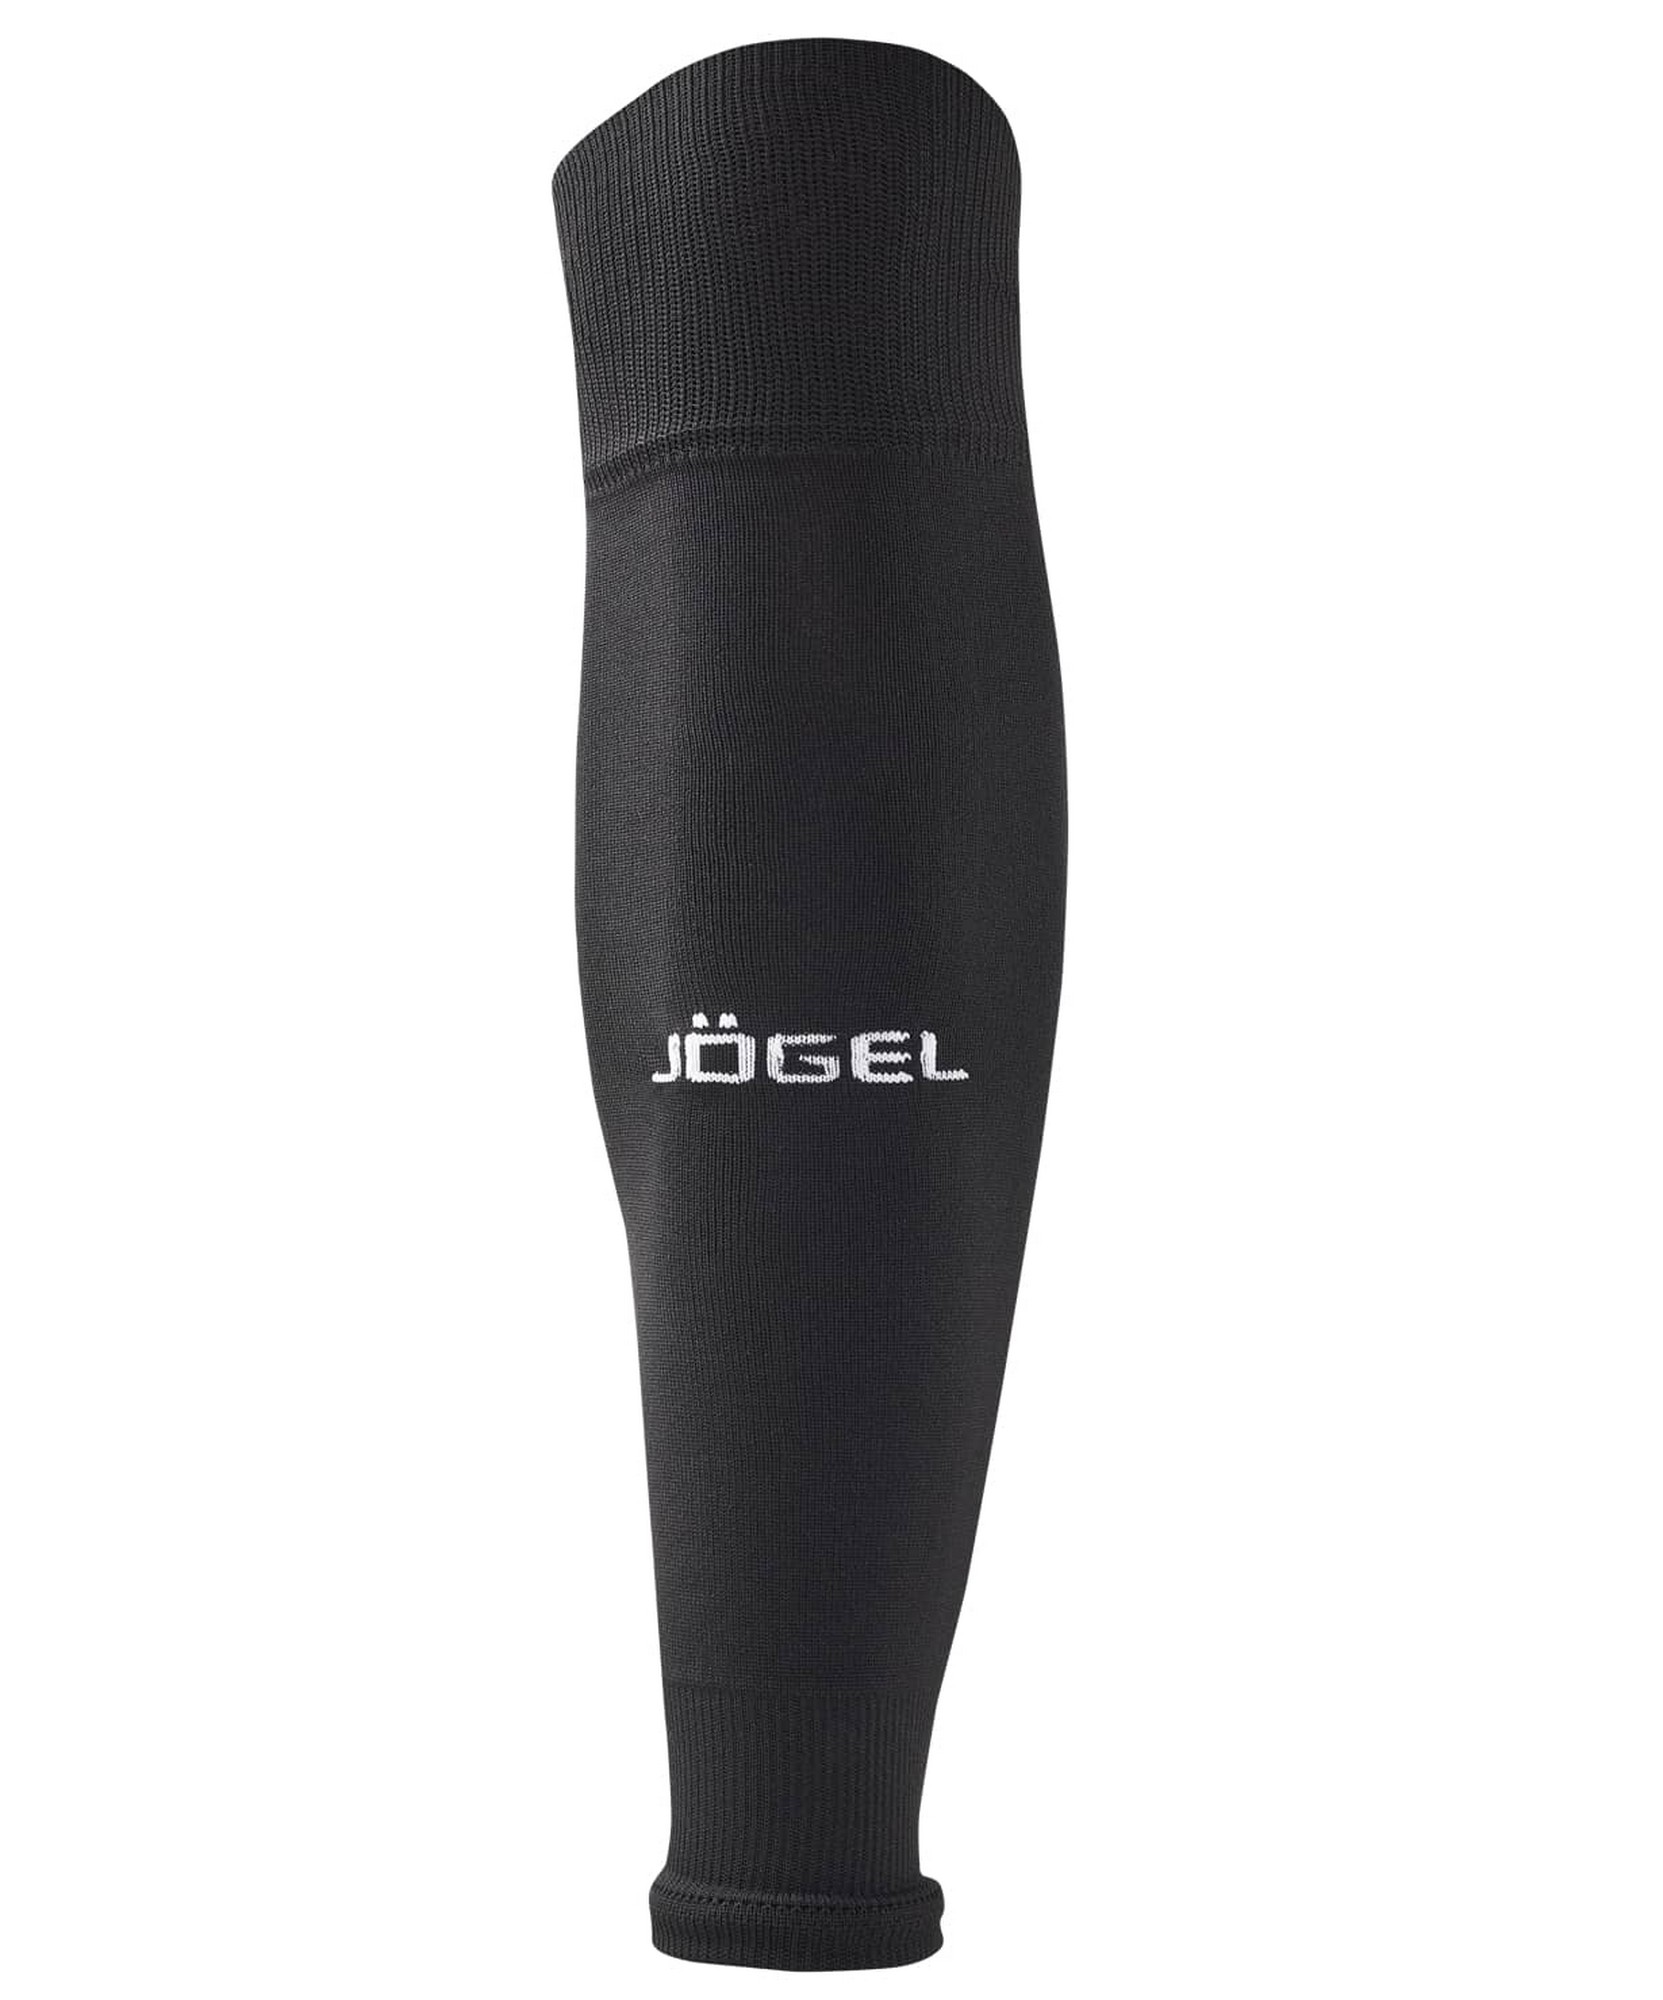 Гетры футбольные Jogel Camp Basic Sleeve Socks, черный\белый 1663_2000